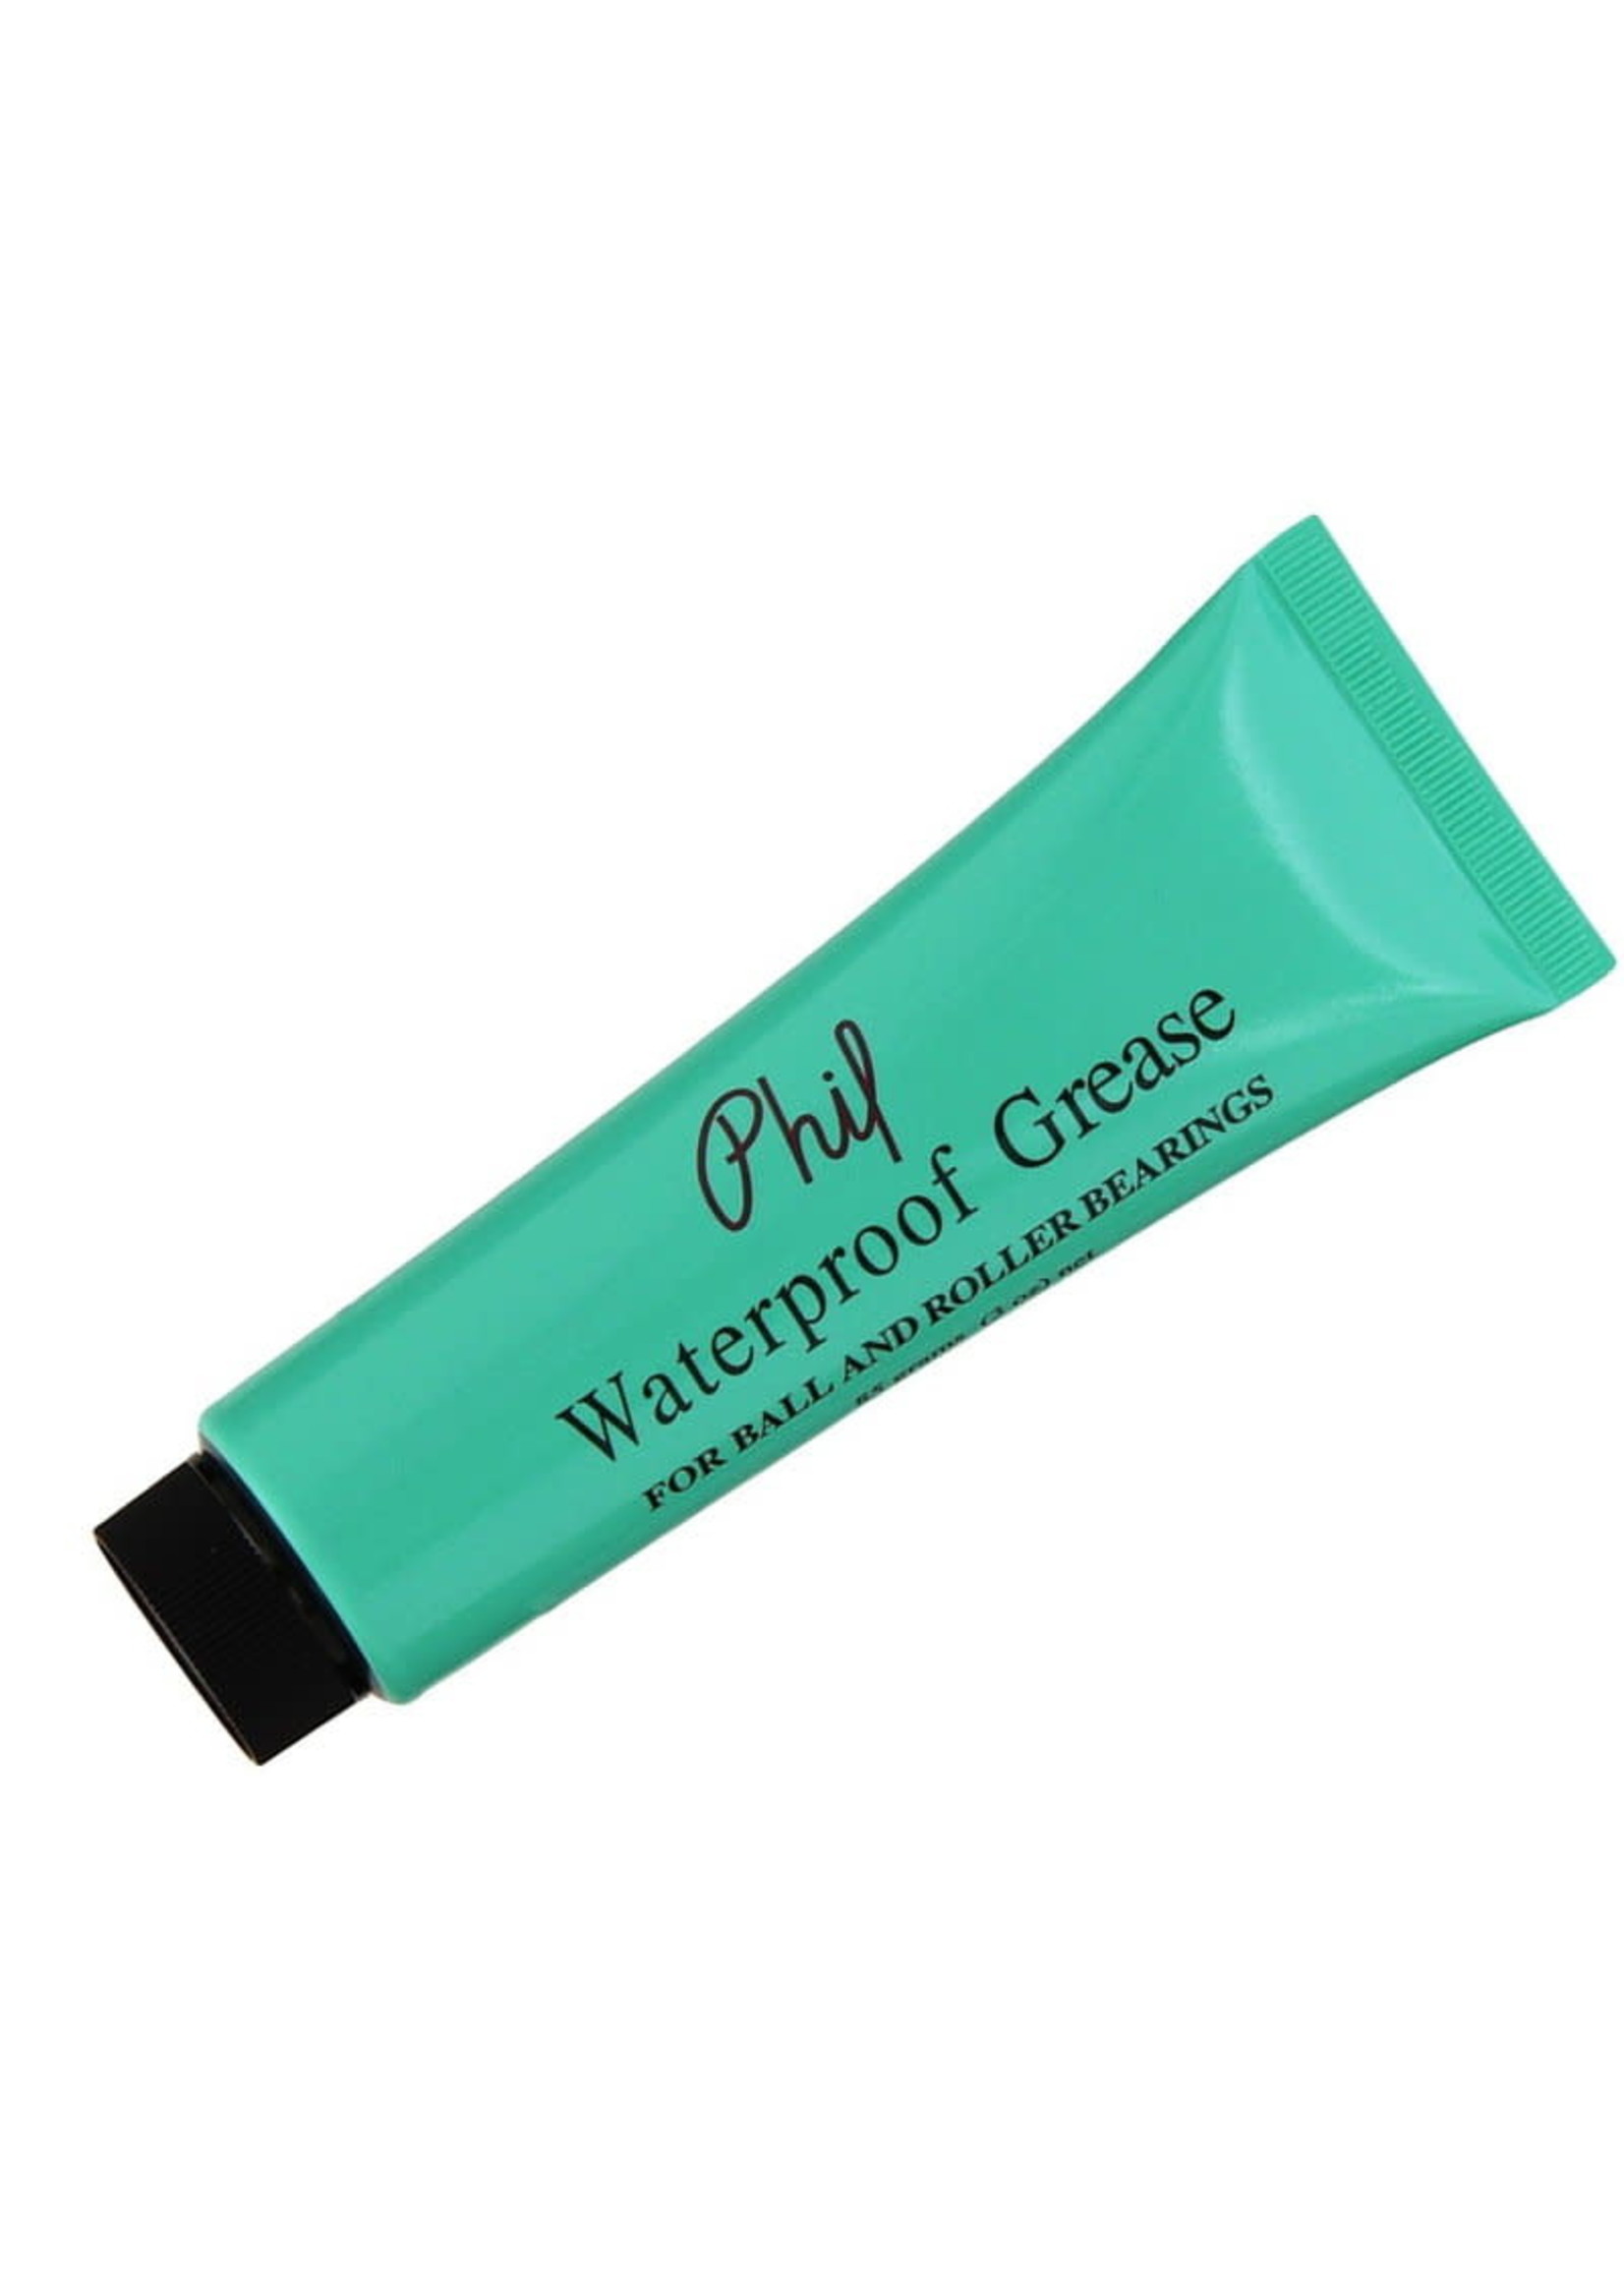 Phil Wood Phil Wood Waterproof Grease Tube: 3oz